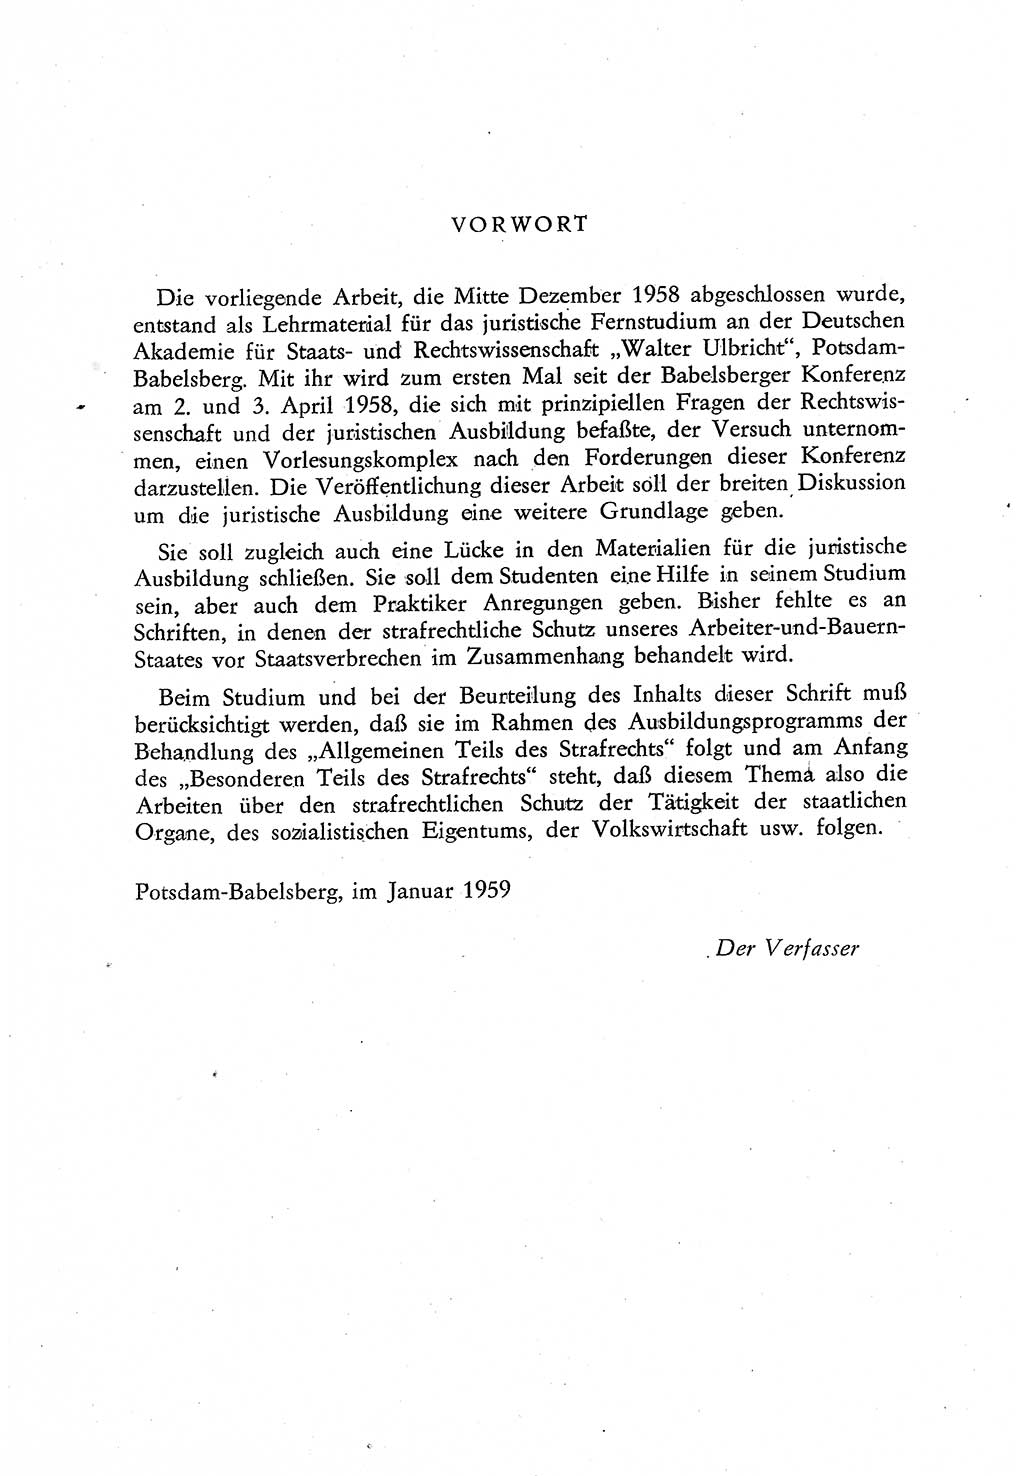 Beiträge zum Strafrecht [Deutsche Demokratische Republik (DDR)], Staatsverbrechen 1959, Seite 7 (Beitr. Strafr. DDR St.-Verbr. 1959, S. 7)